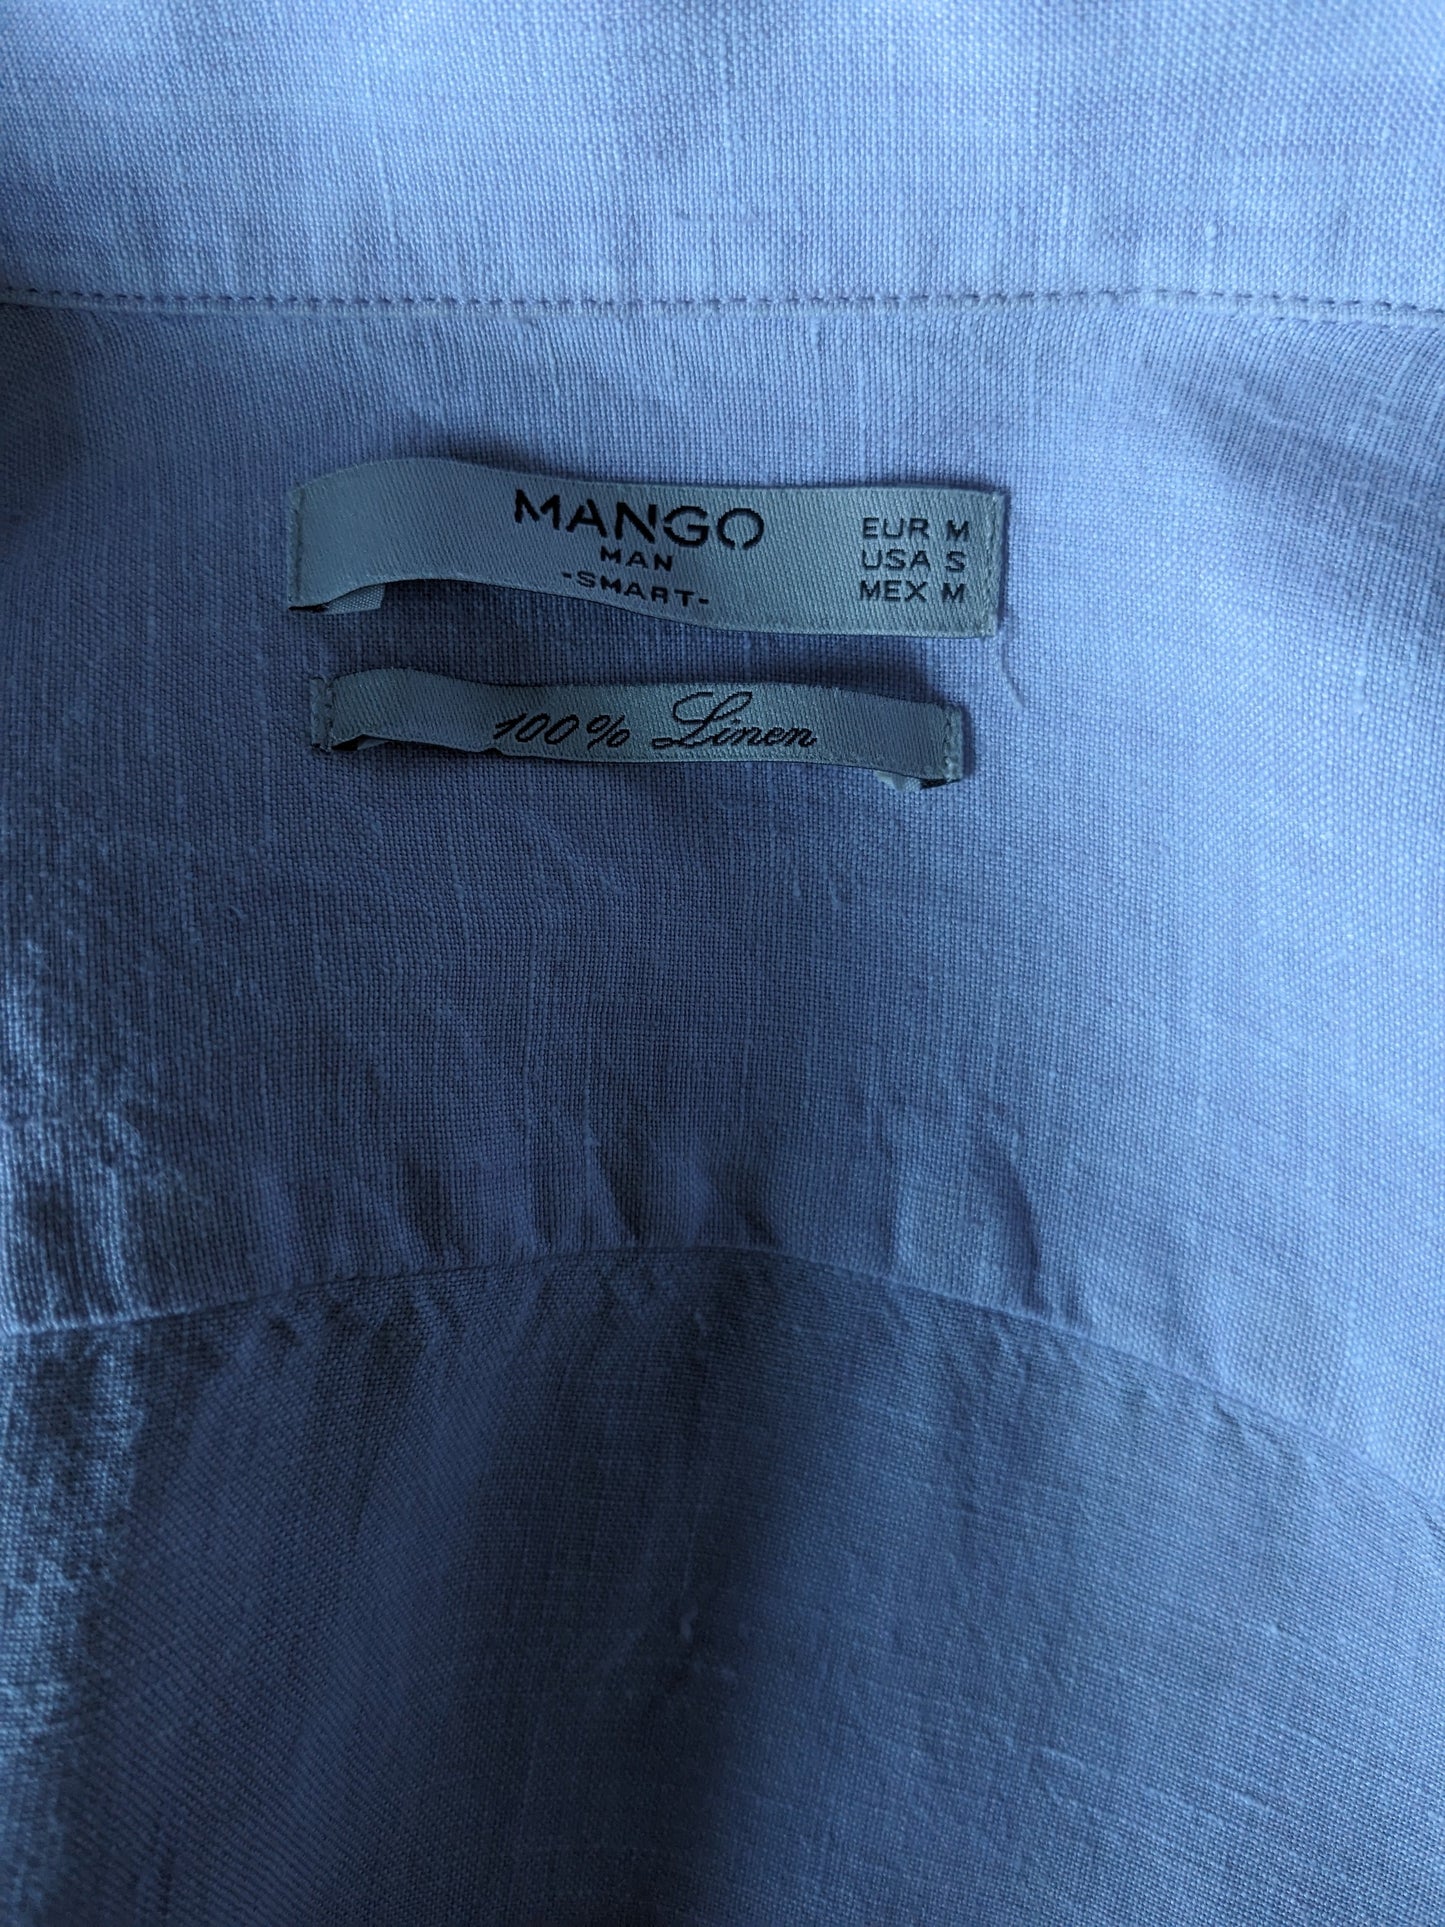 Mango Man Linnen overhemd. Lila gekleurd. Maat M.